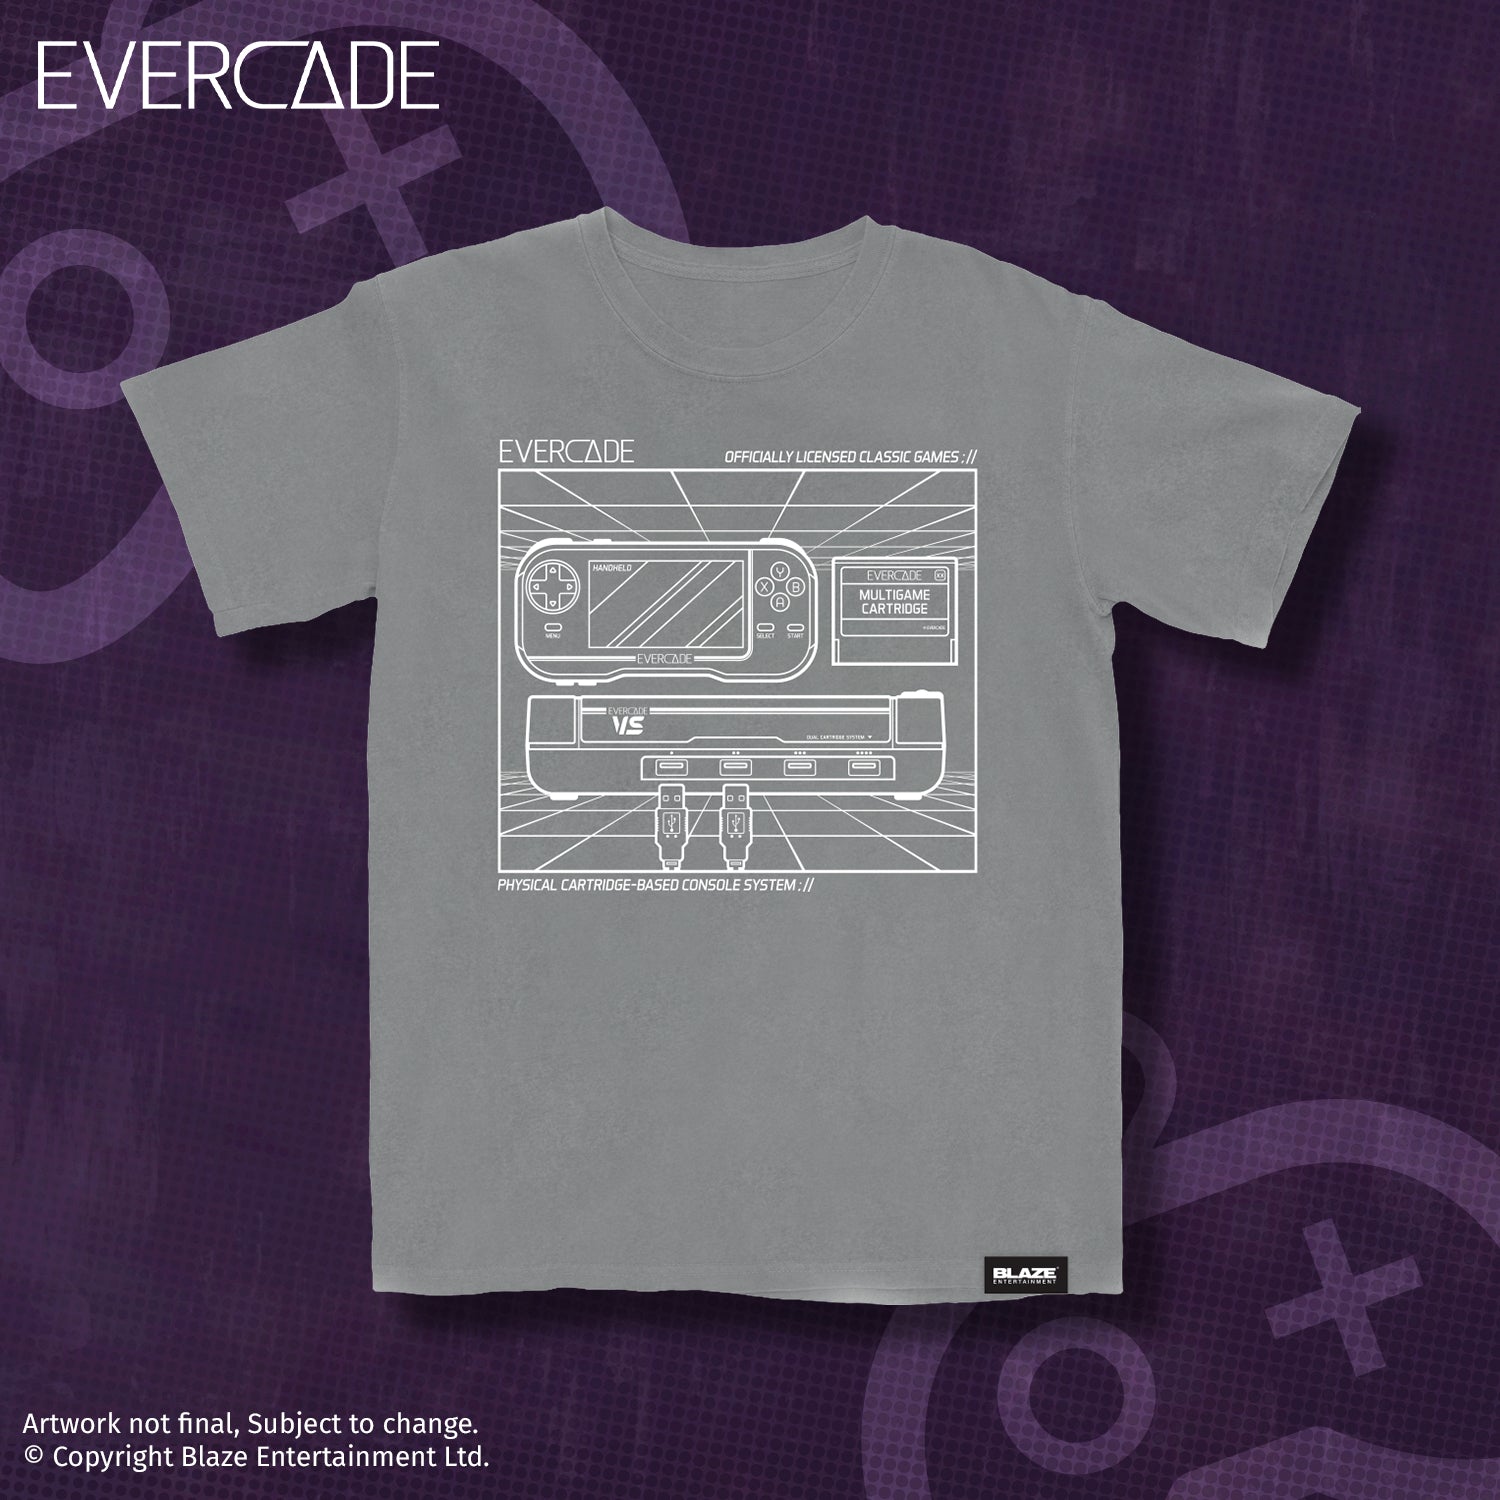 Evercade, Official Website